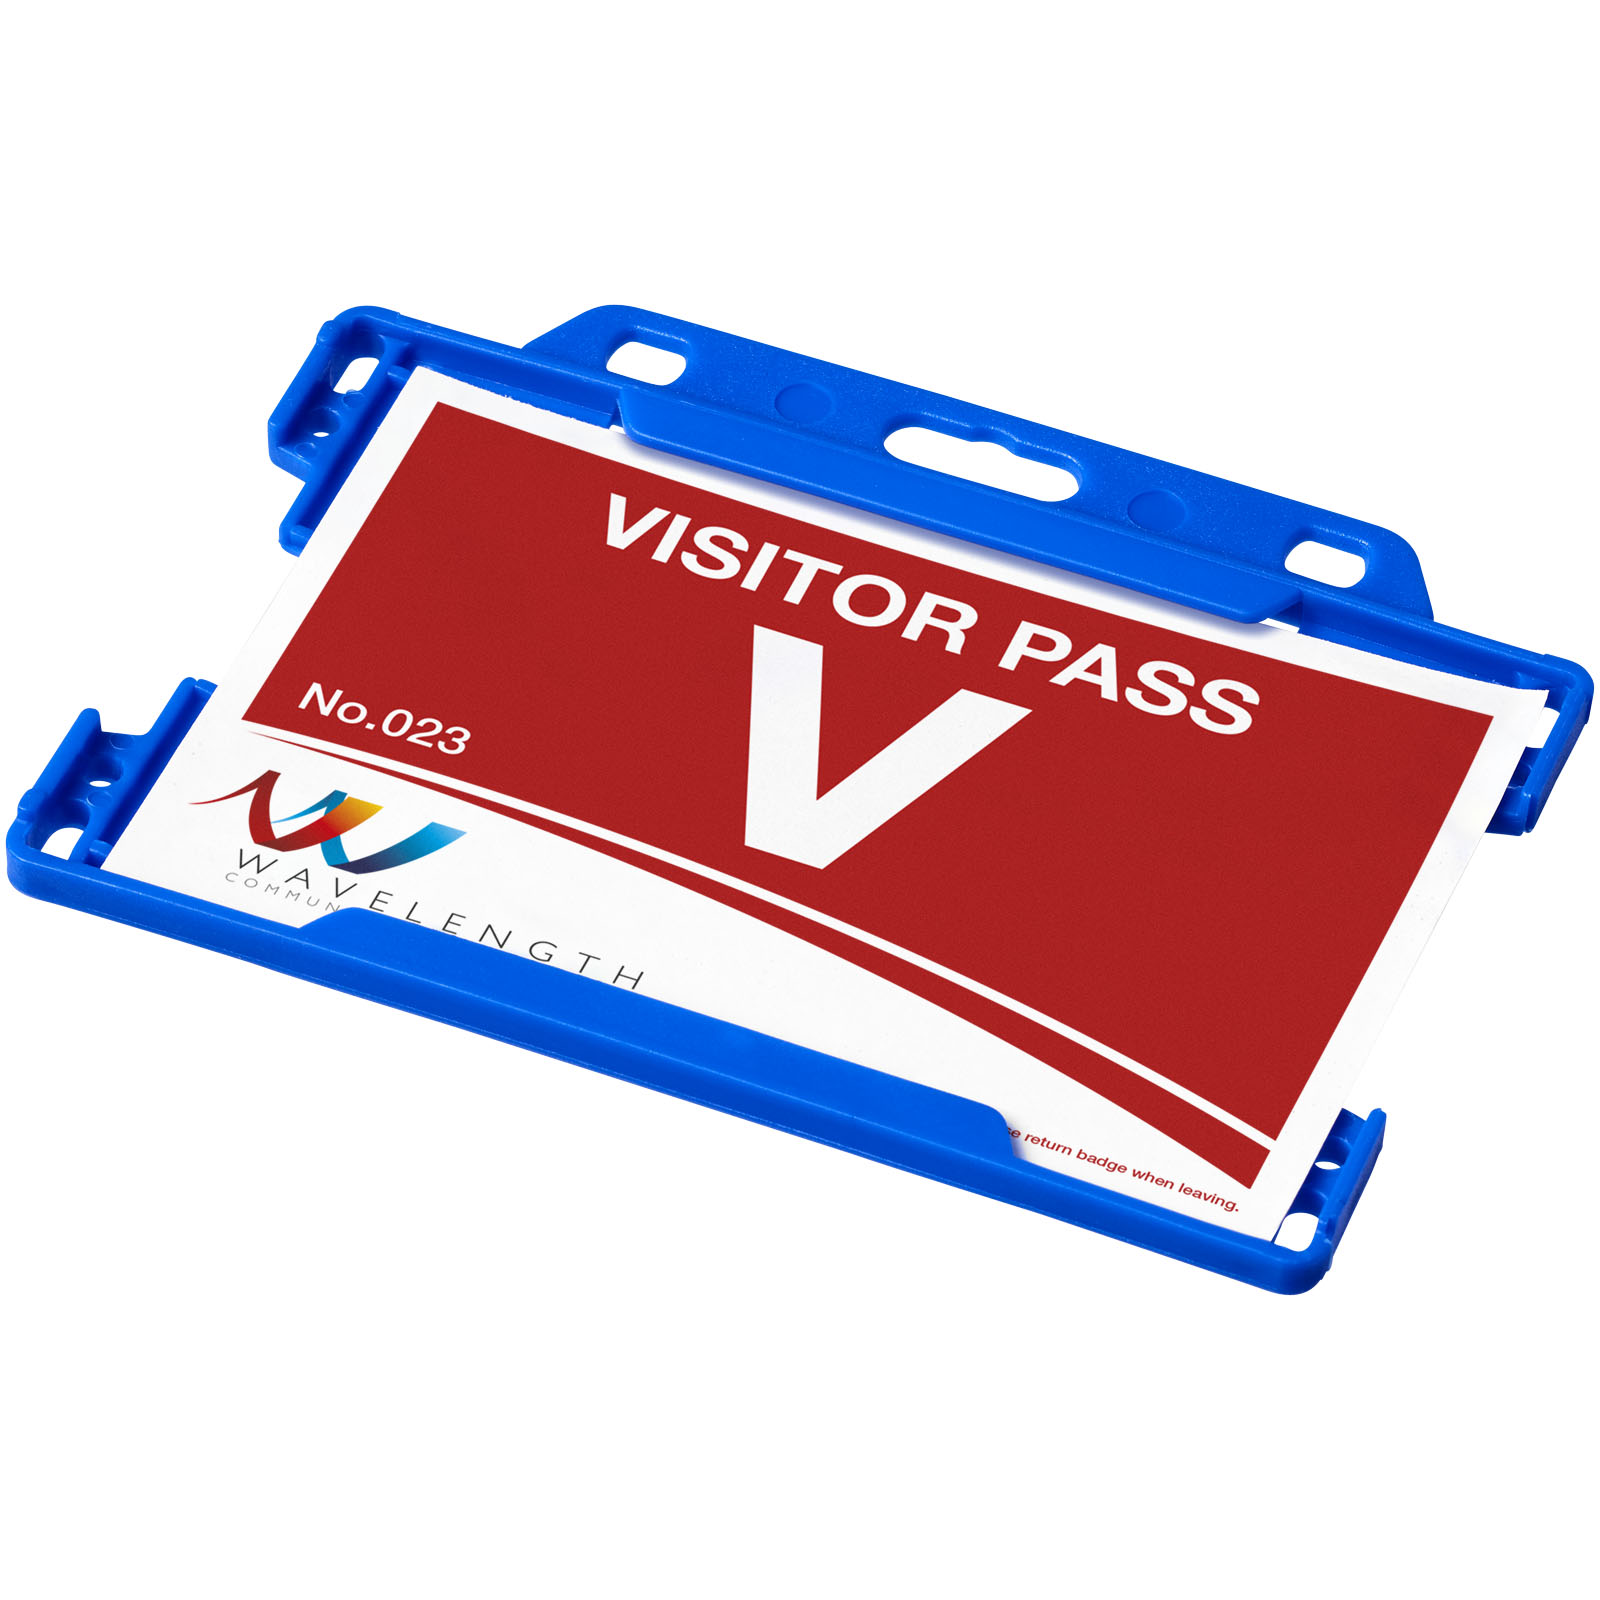 Business Card Holders - Vega plastic card holder